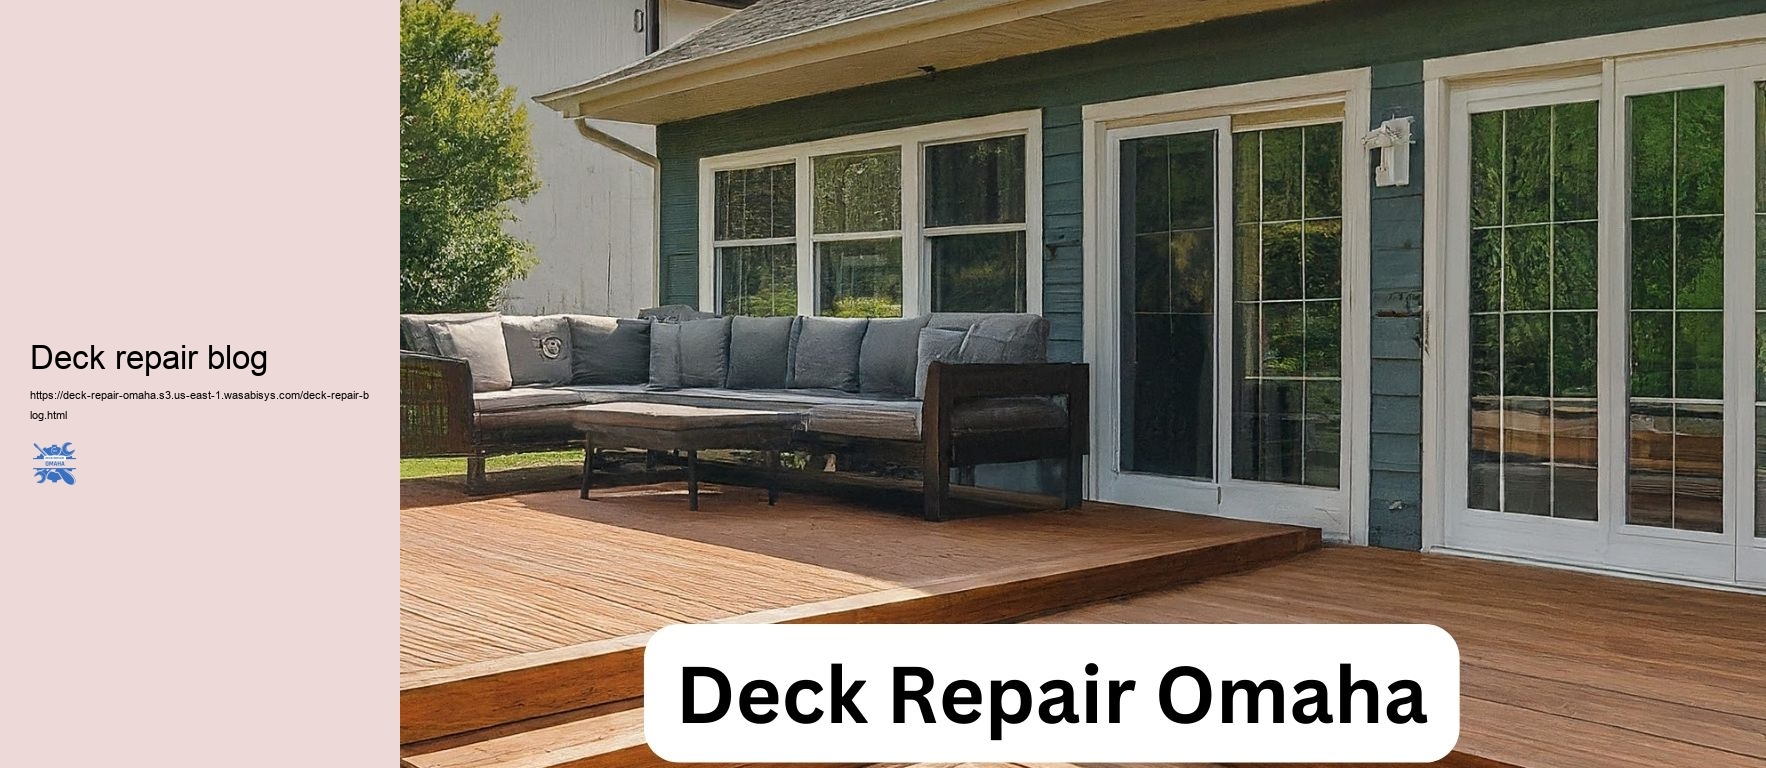 Deck repair blog